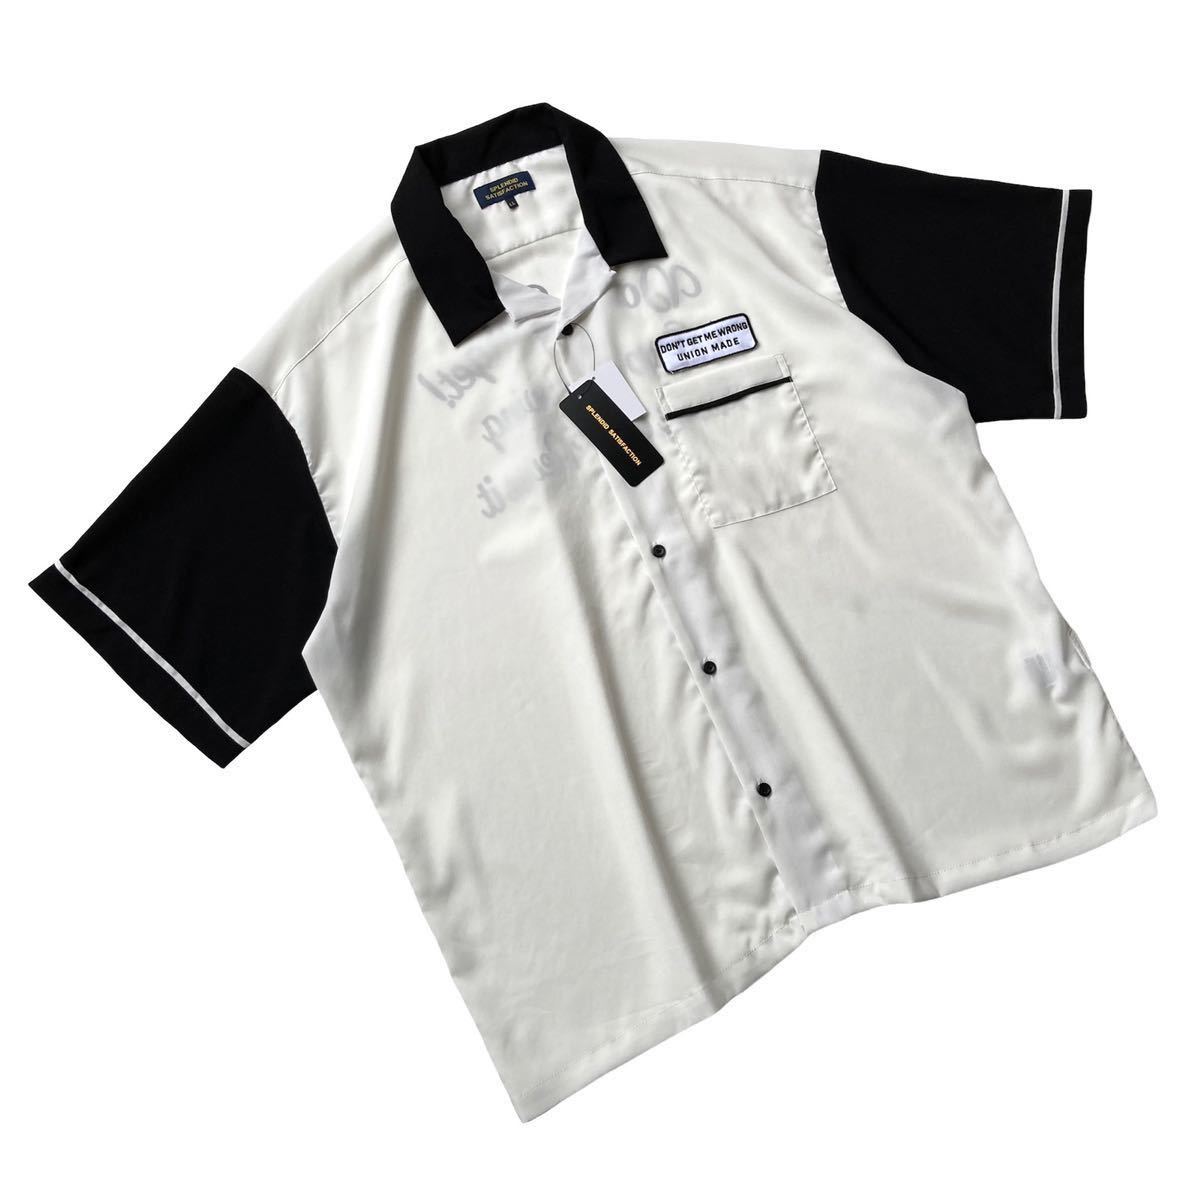 新品 レトロプリント【ナイトデイ】バイカラー ボウリングシャツ XL ホワイト ブラック 白 黒 ボーリングシャツ ビッグシルエット 半袖 